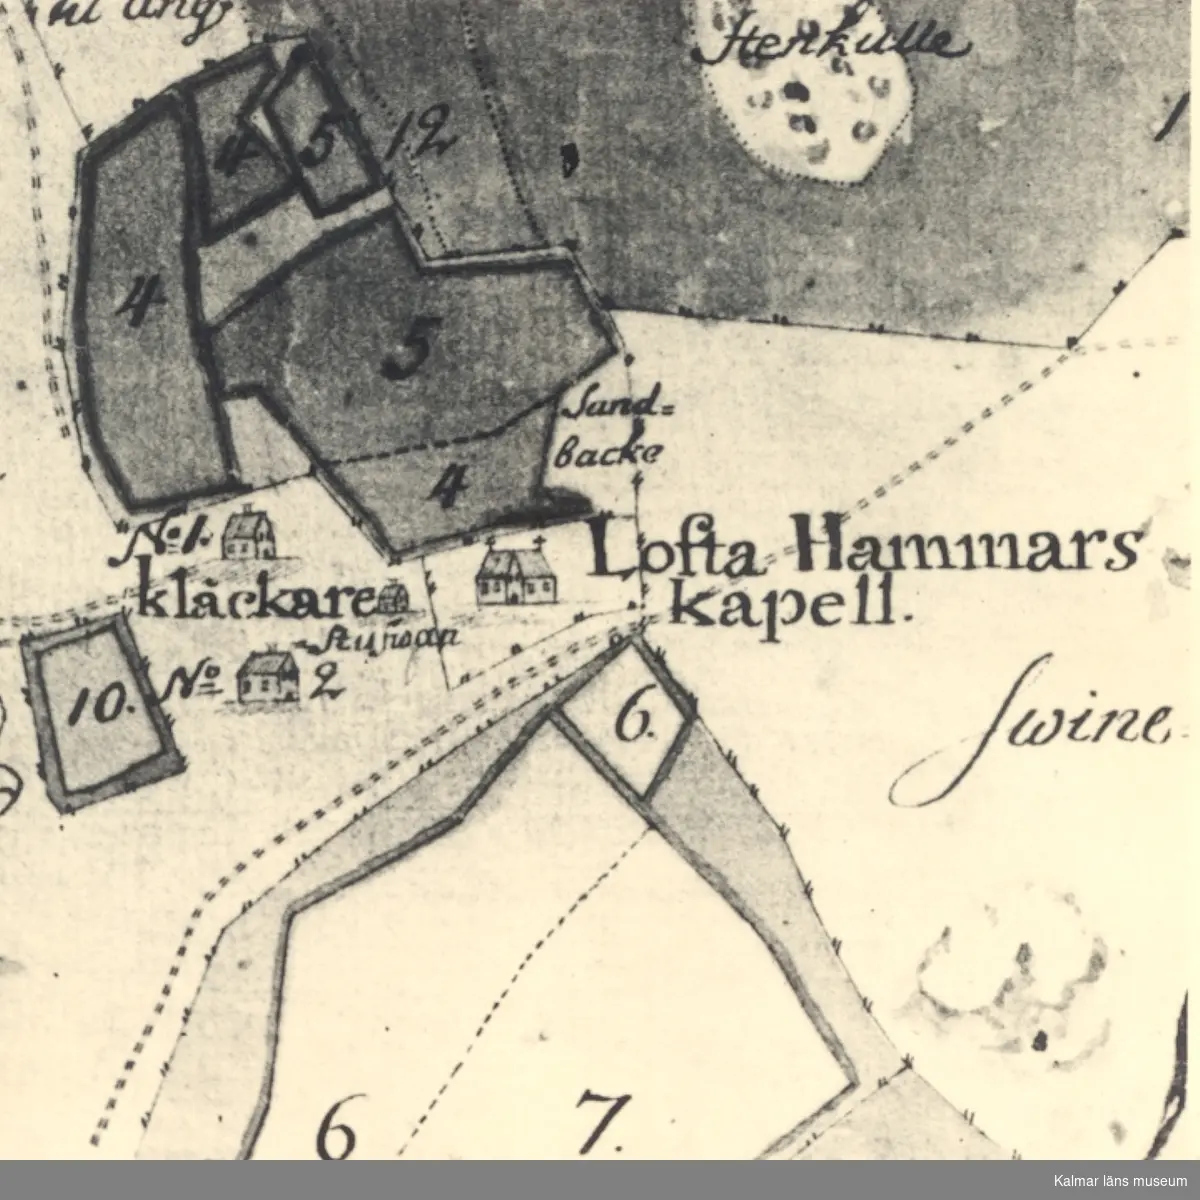 Utsnitt av karta som visar Loftahammars kapell och klockarboställe.